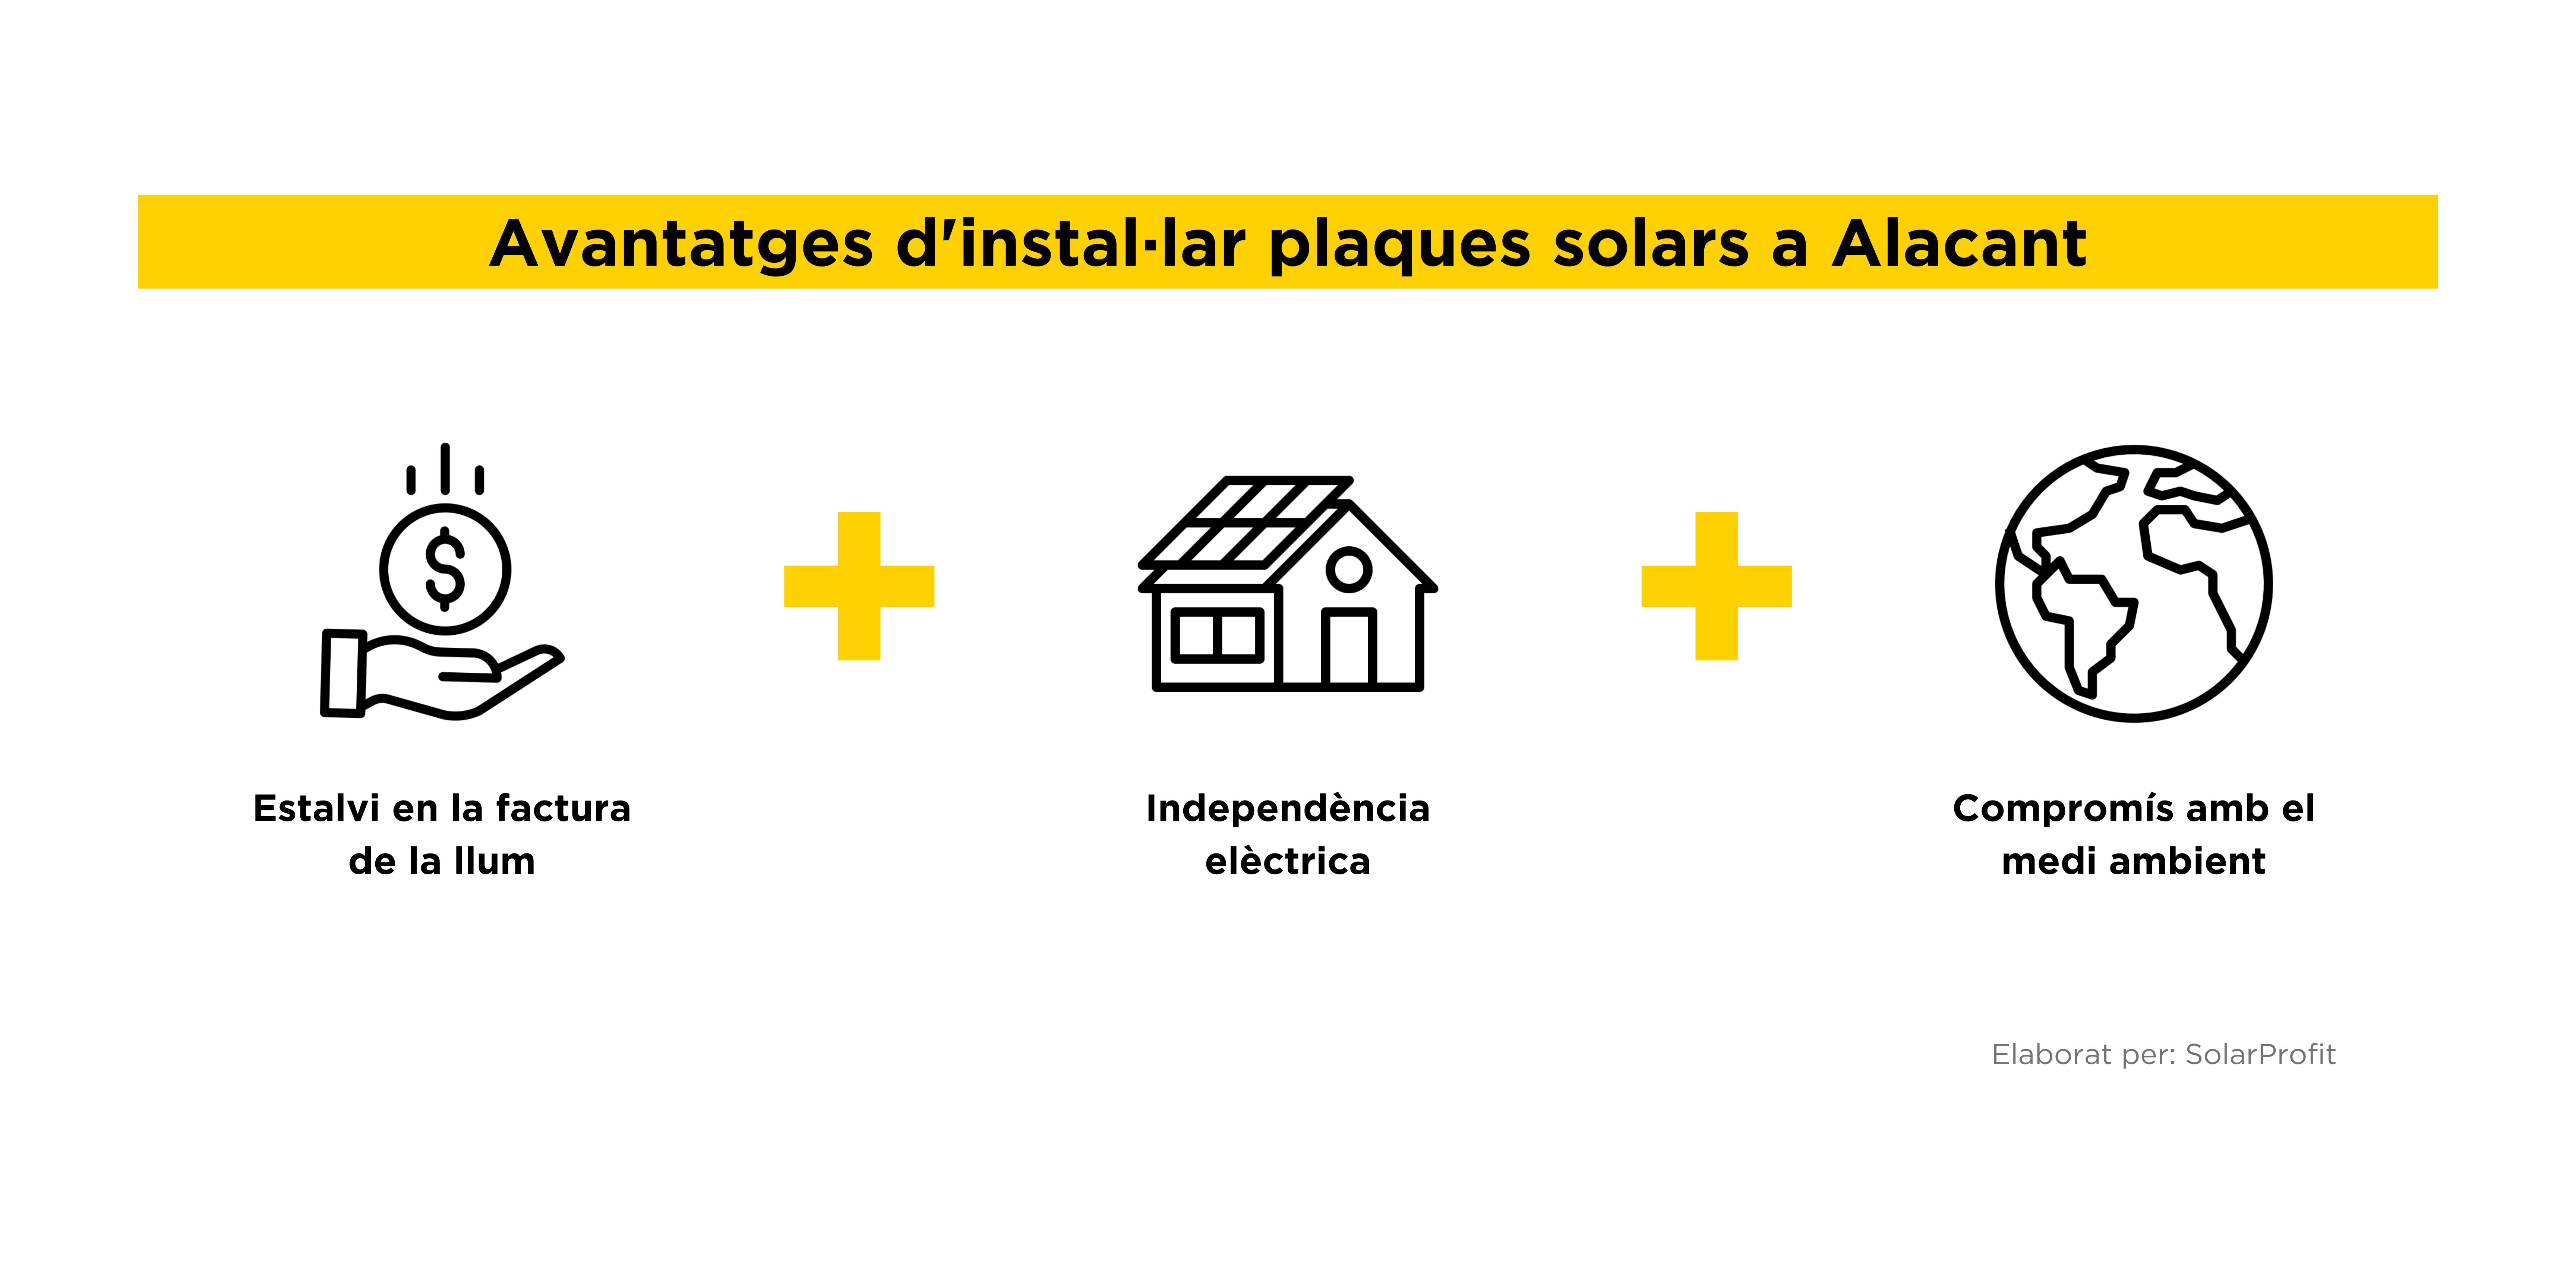 Avantatges plaques solars Alacant